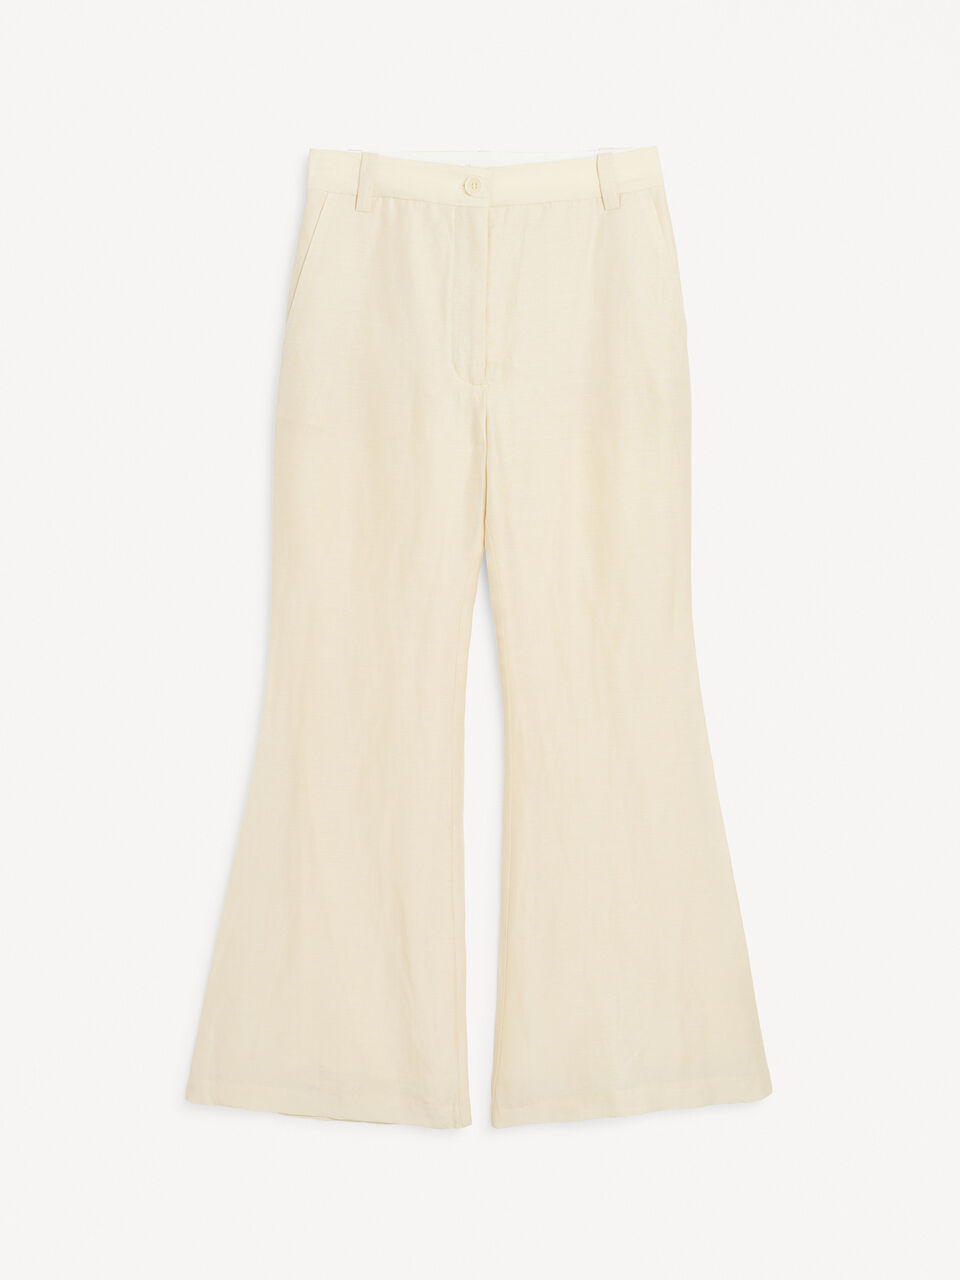 Carass trousers in linen blend